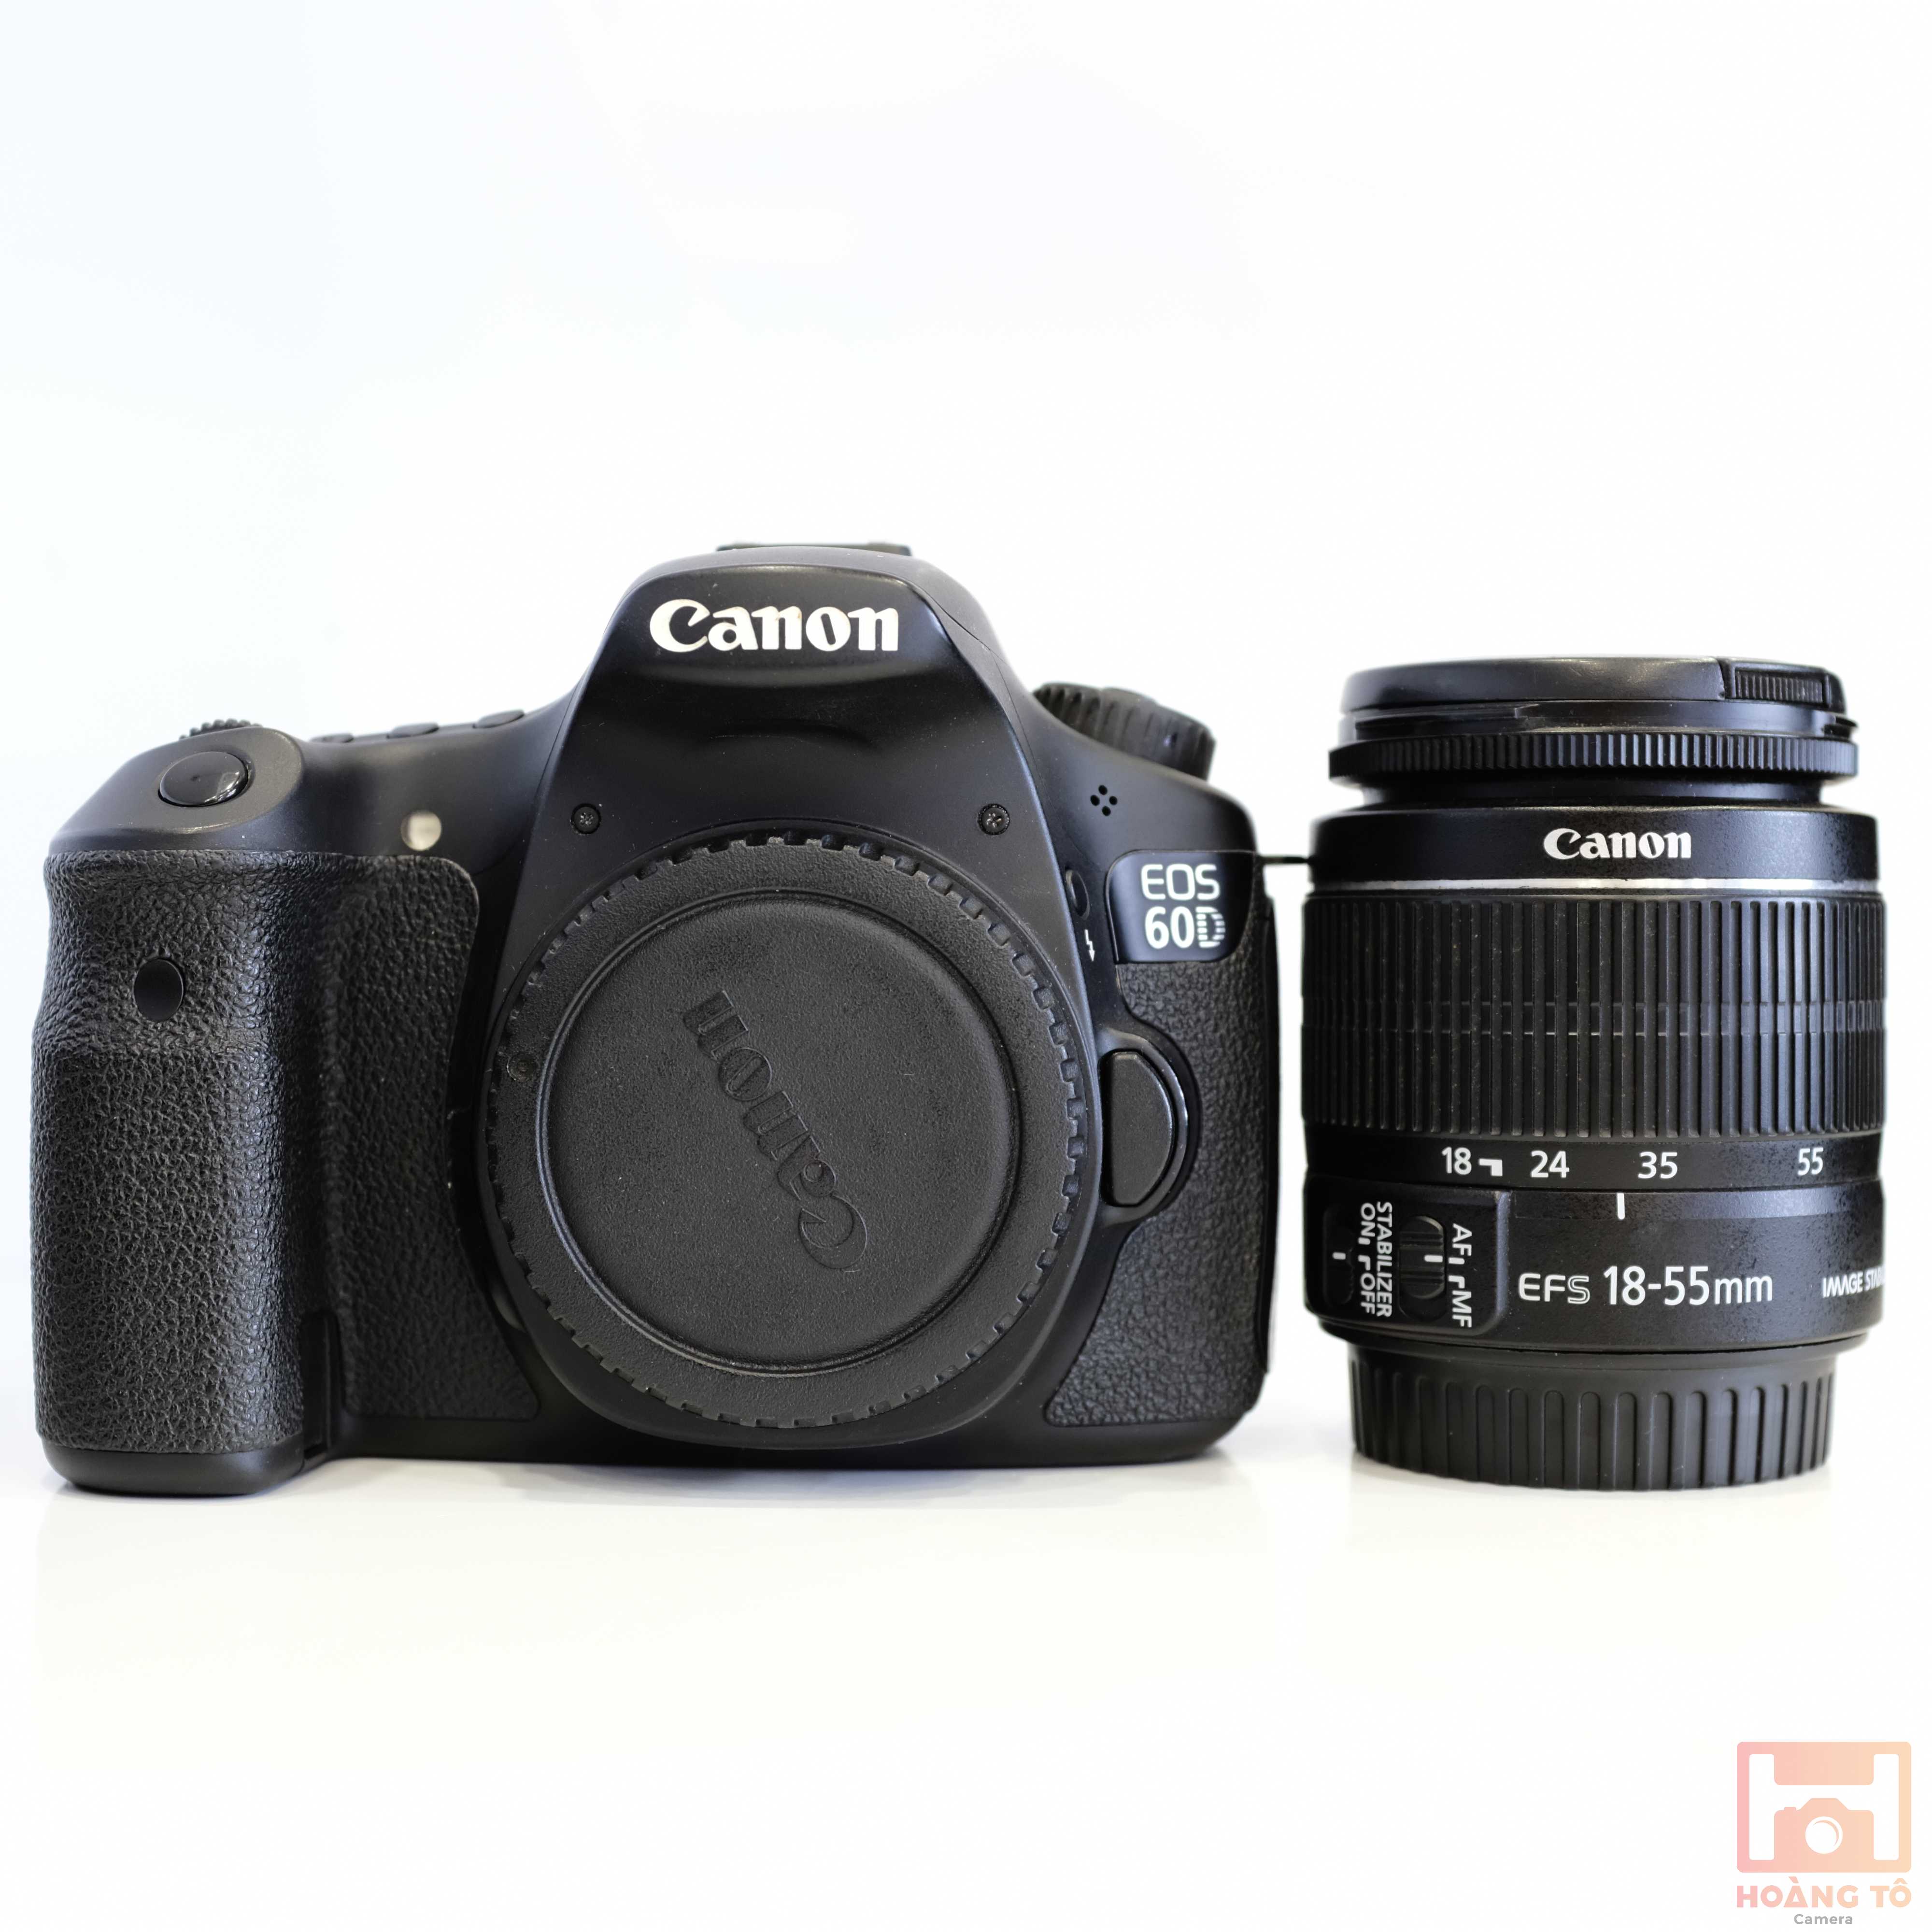 Bạn đang tìm kiếm một chiếc máy ảnh chất lượng hoàn hảo nhưng lại muốn tiết kiệm chi phí đến mức phải mua máy ảnh cũ? Vậy thì máy ảnh Canon cũ chính là lựa chọn hoàn hảo cho bạn.